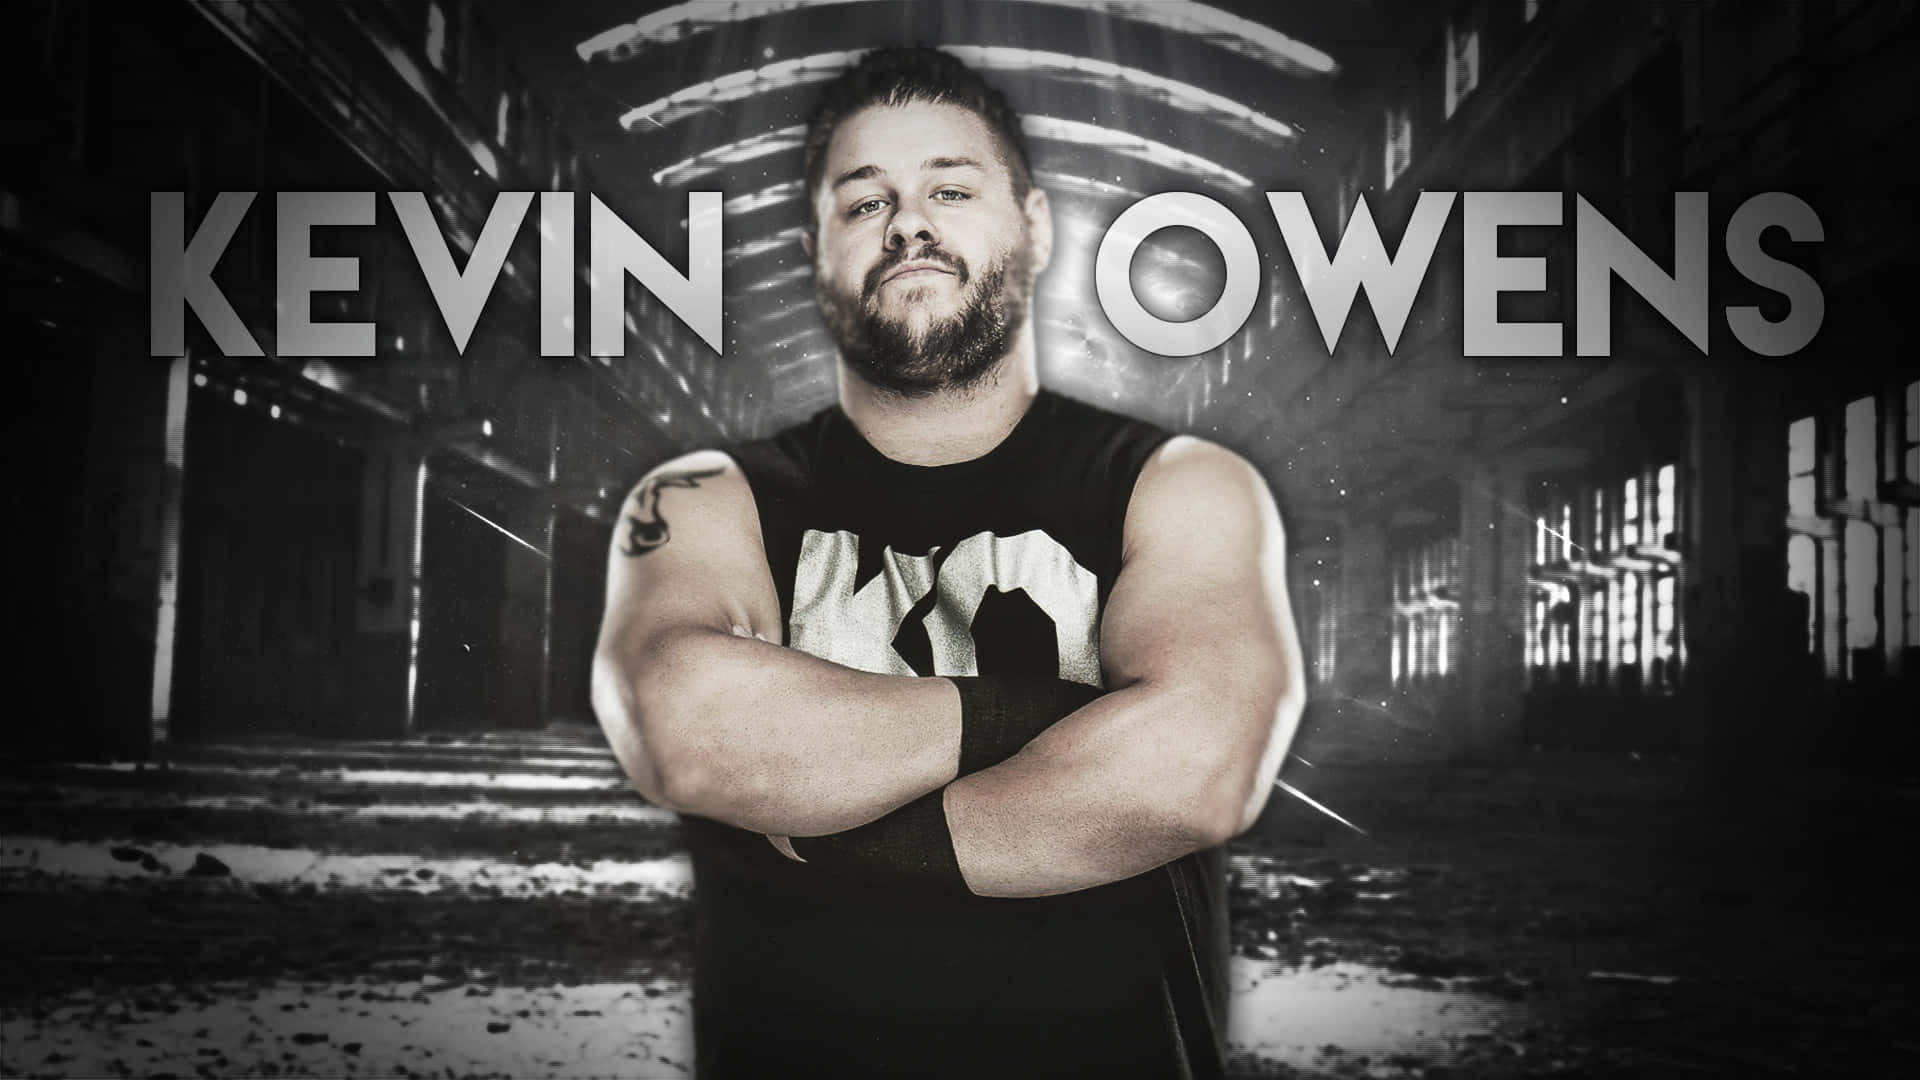 Kevin Owens Wrestler Poster